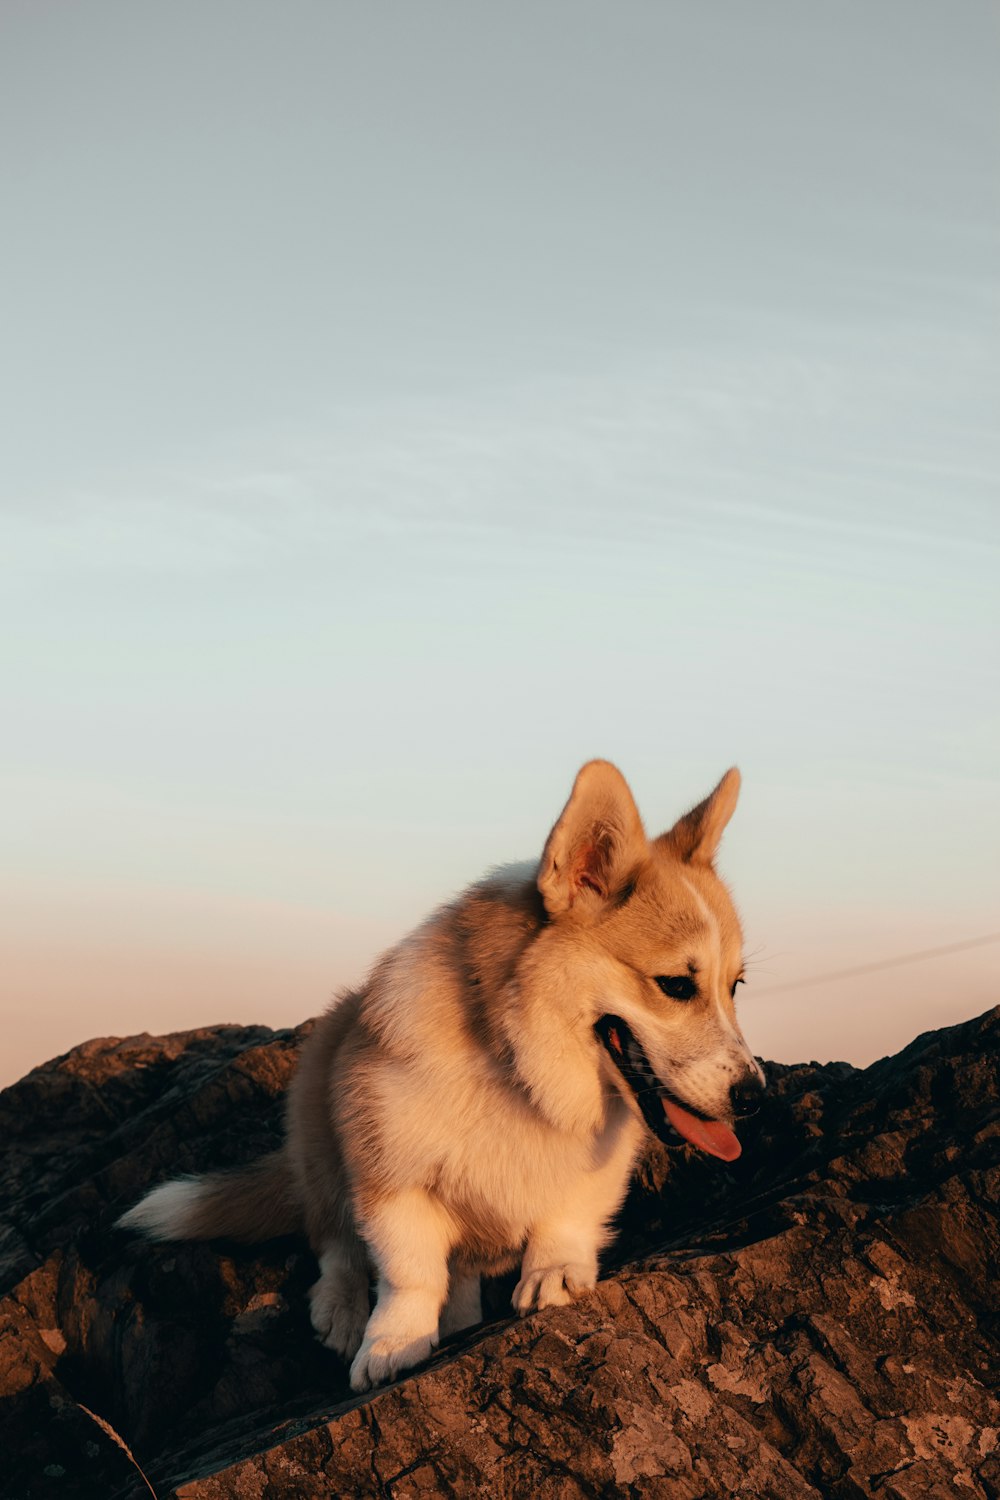 Brauner und weißer langhaariger Hund auf brauner Felsformation tagsüber